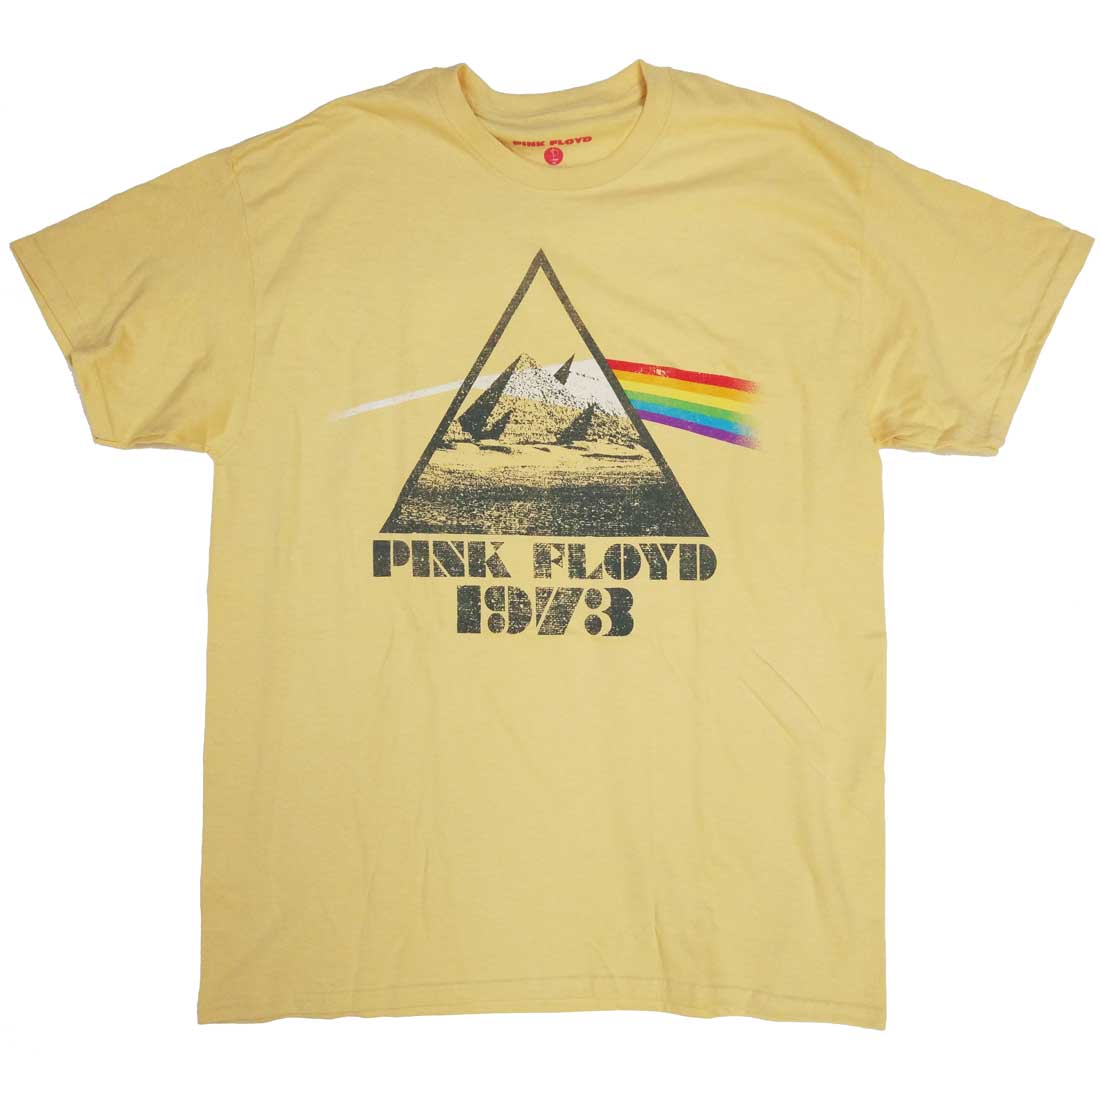 pink floyd 1973 tour shirt